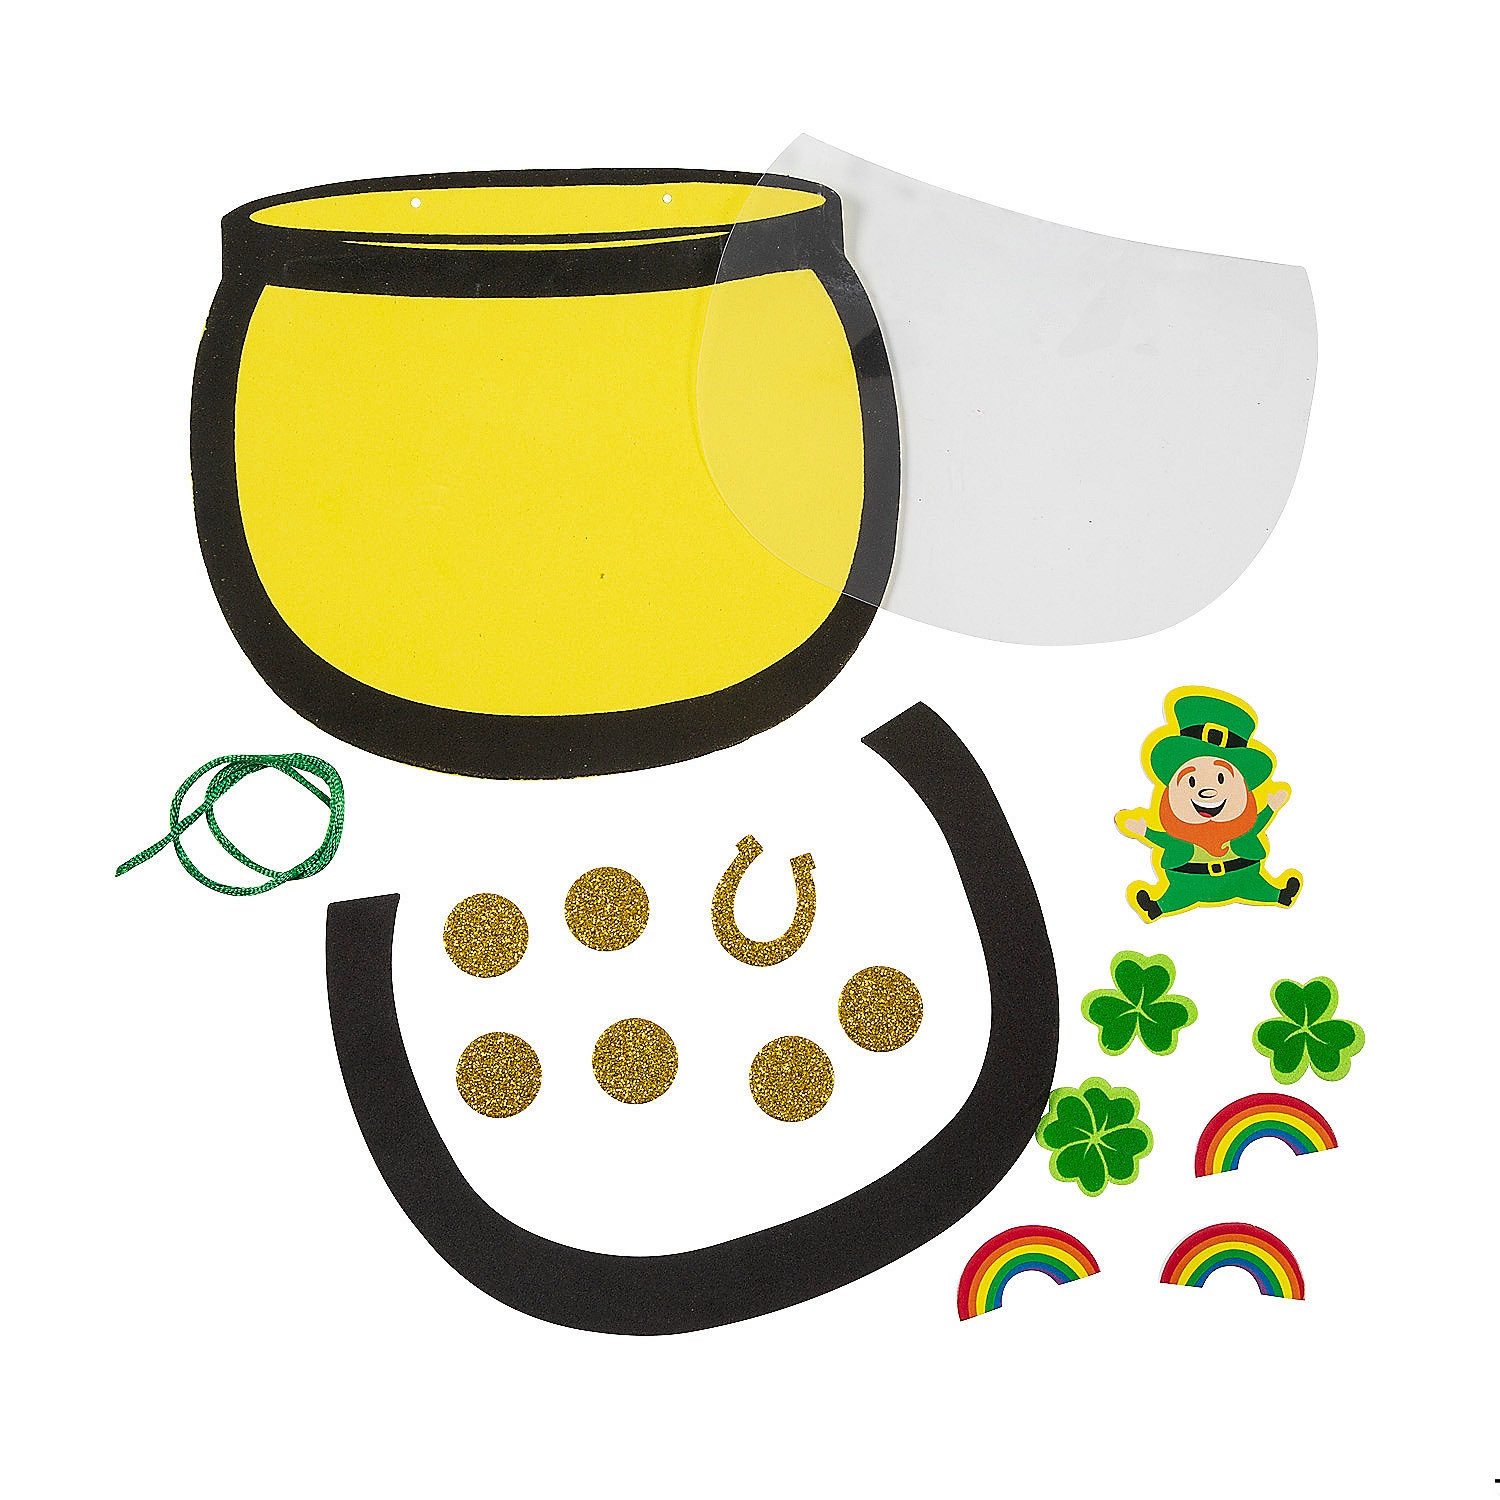 pot-of-gold-sign-craft-kit-makes-12_14194186-a01